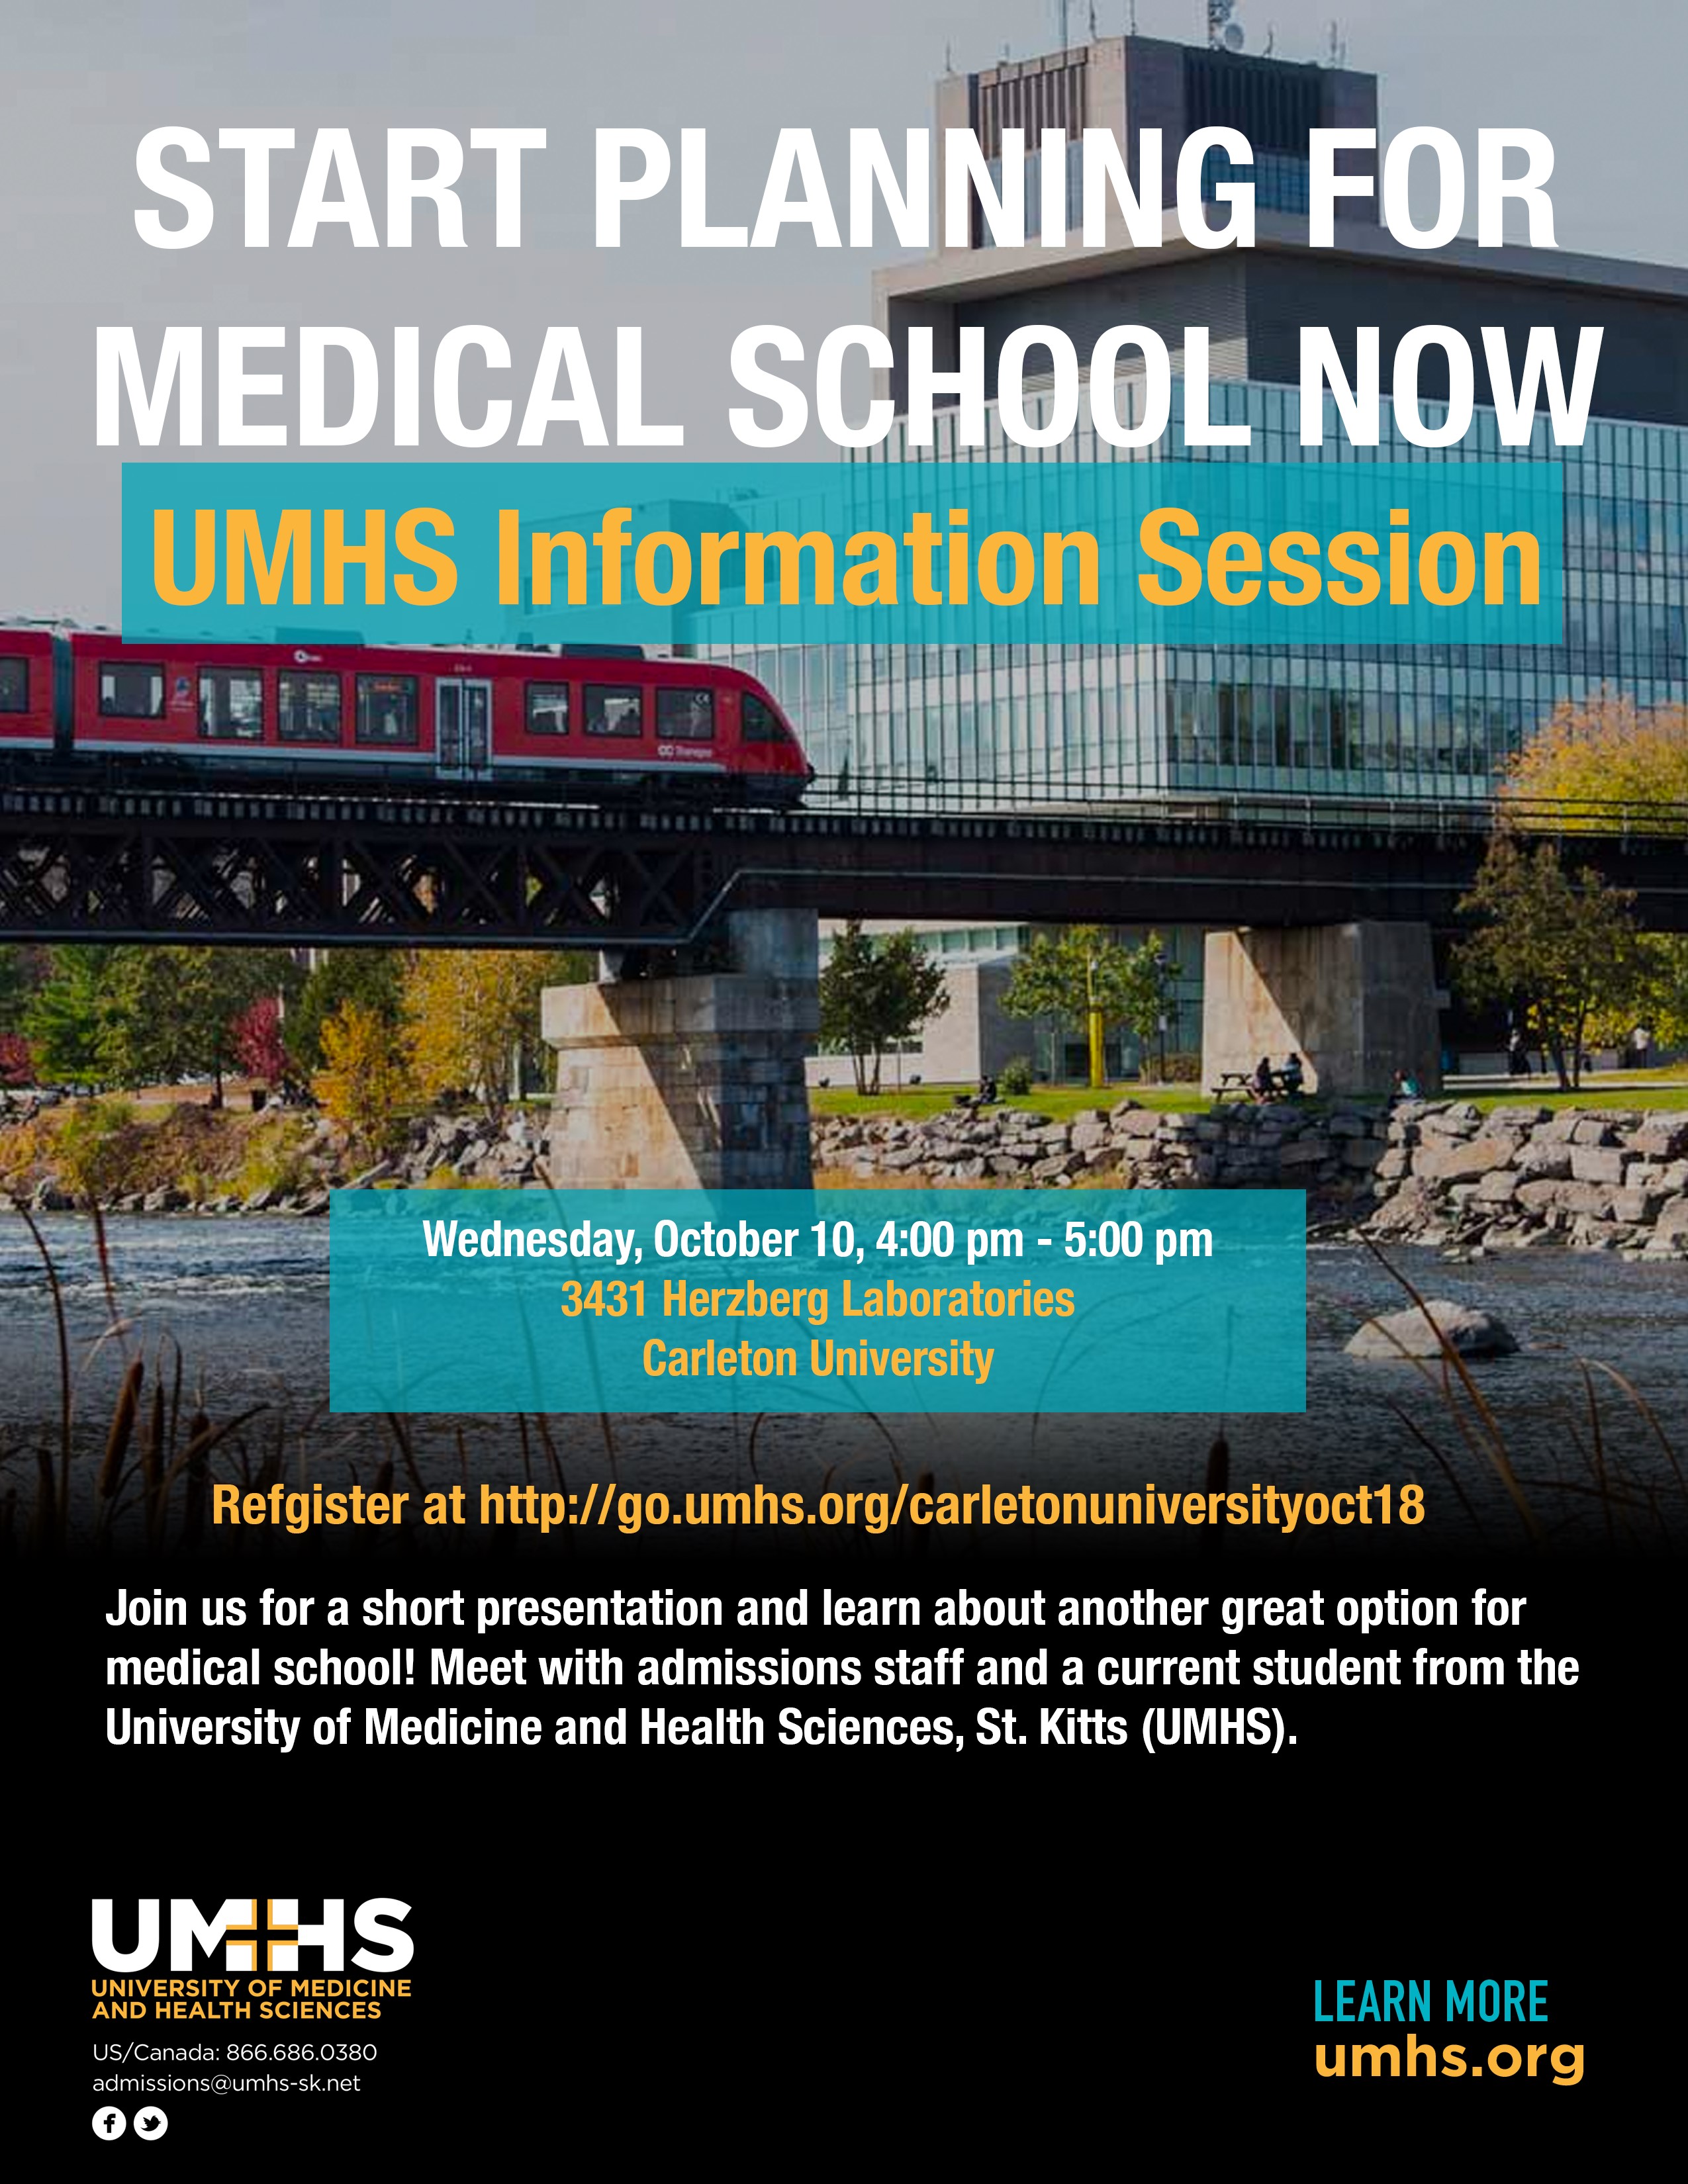 UMHS Carleton visit - Oct 10 @ 4PM